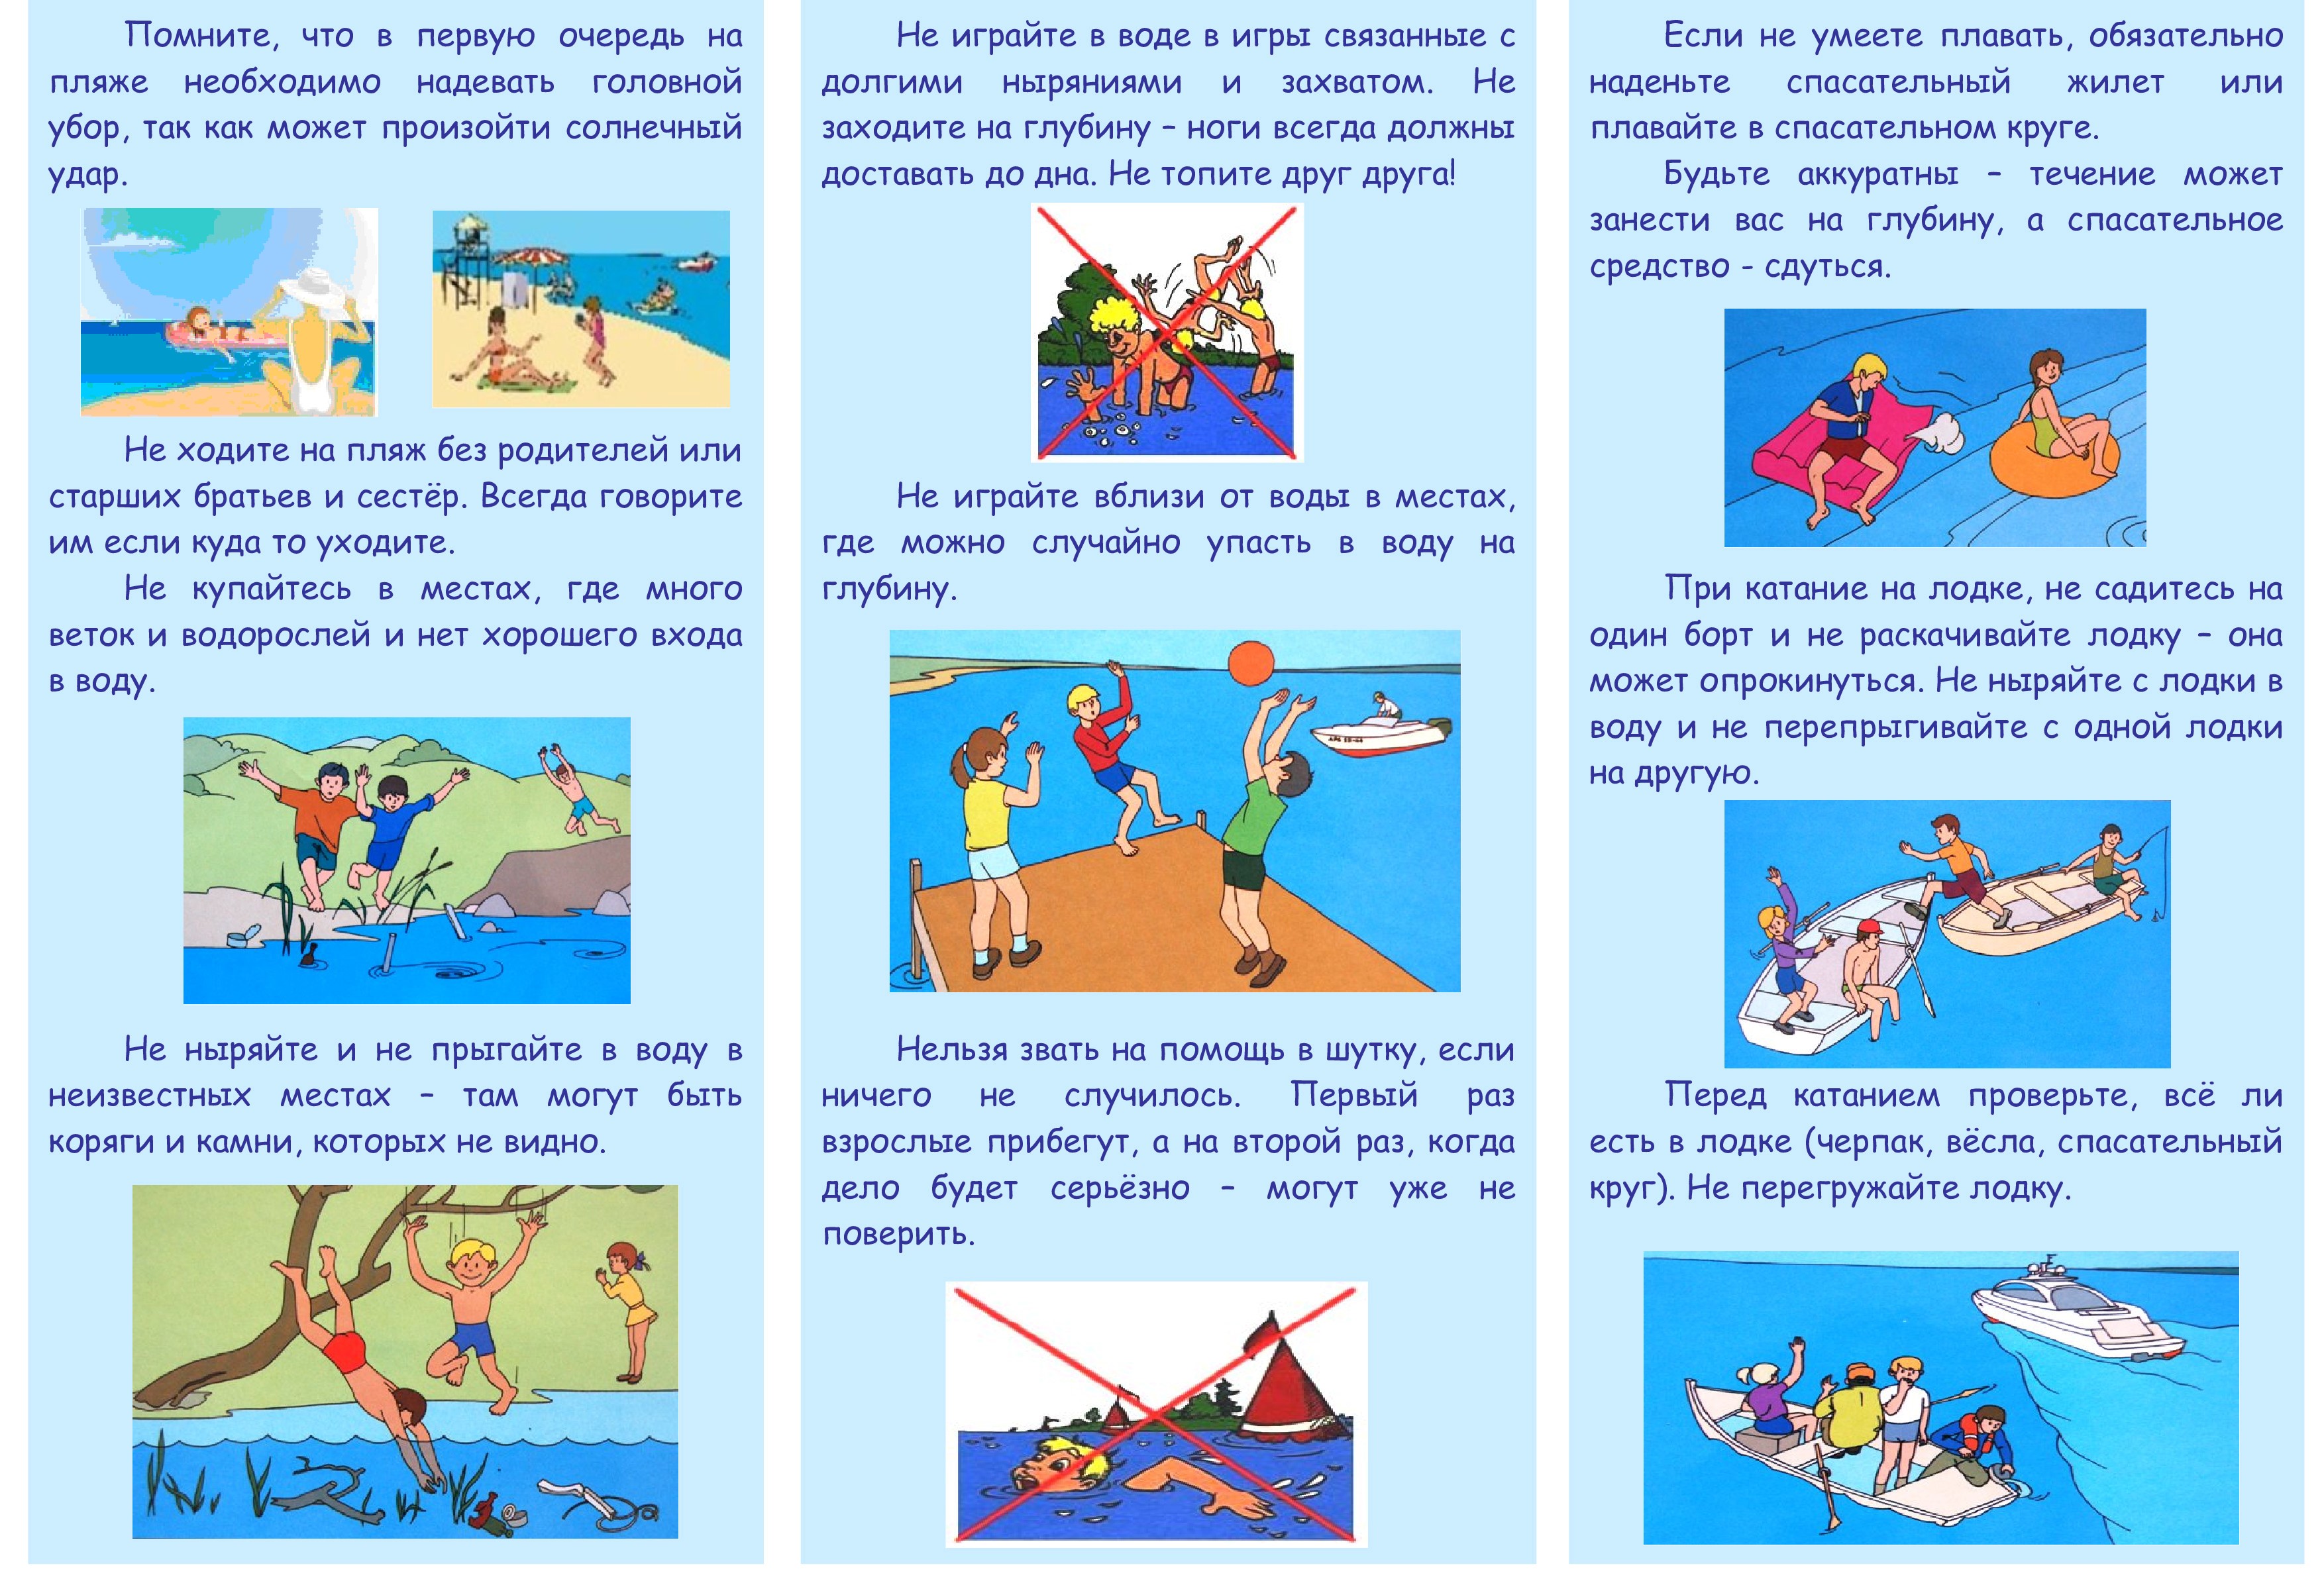 Безопасное поведение детей в летний период. Поведение на водоемах летом. Правила поведения на воде. Памяткабезопасност на воде. Безопасное поведение на воде для детей.